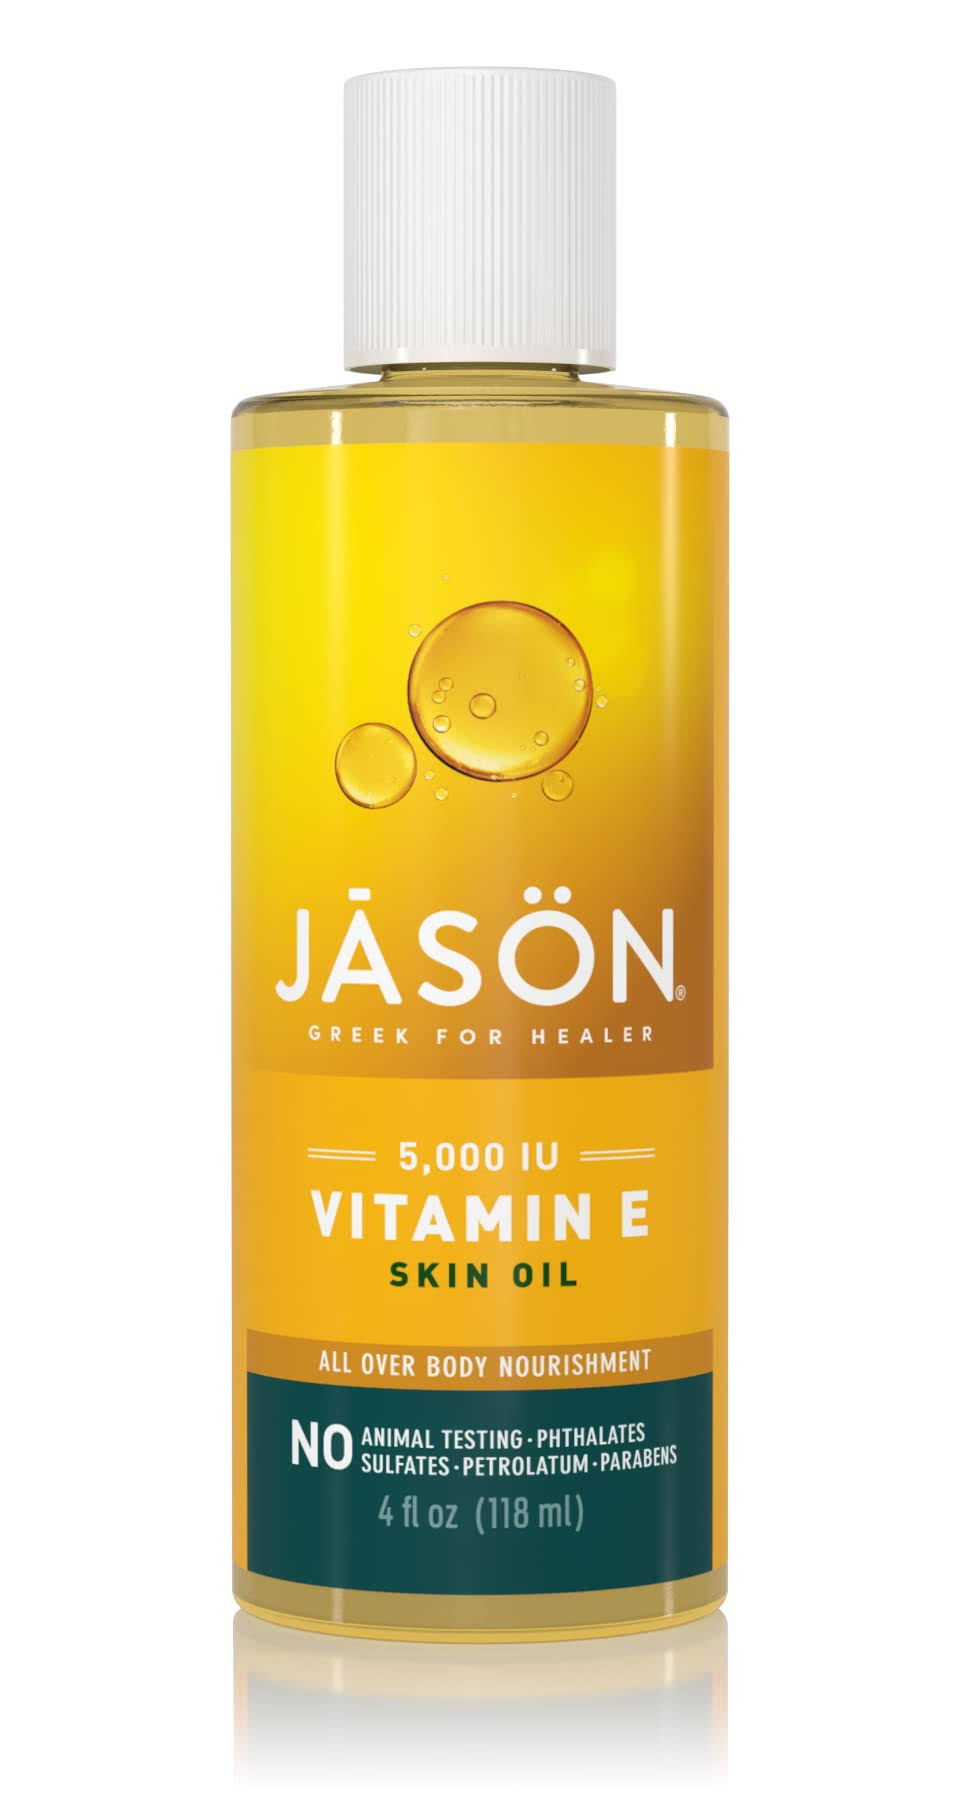 Jason Vitamin E Pure Beauty Oil - 5,000 IU